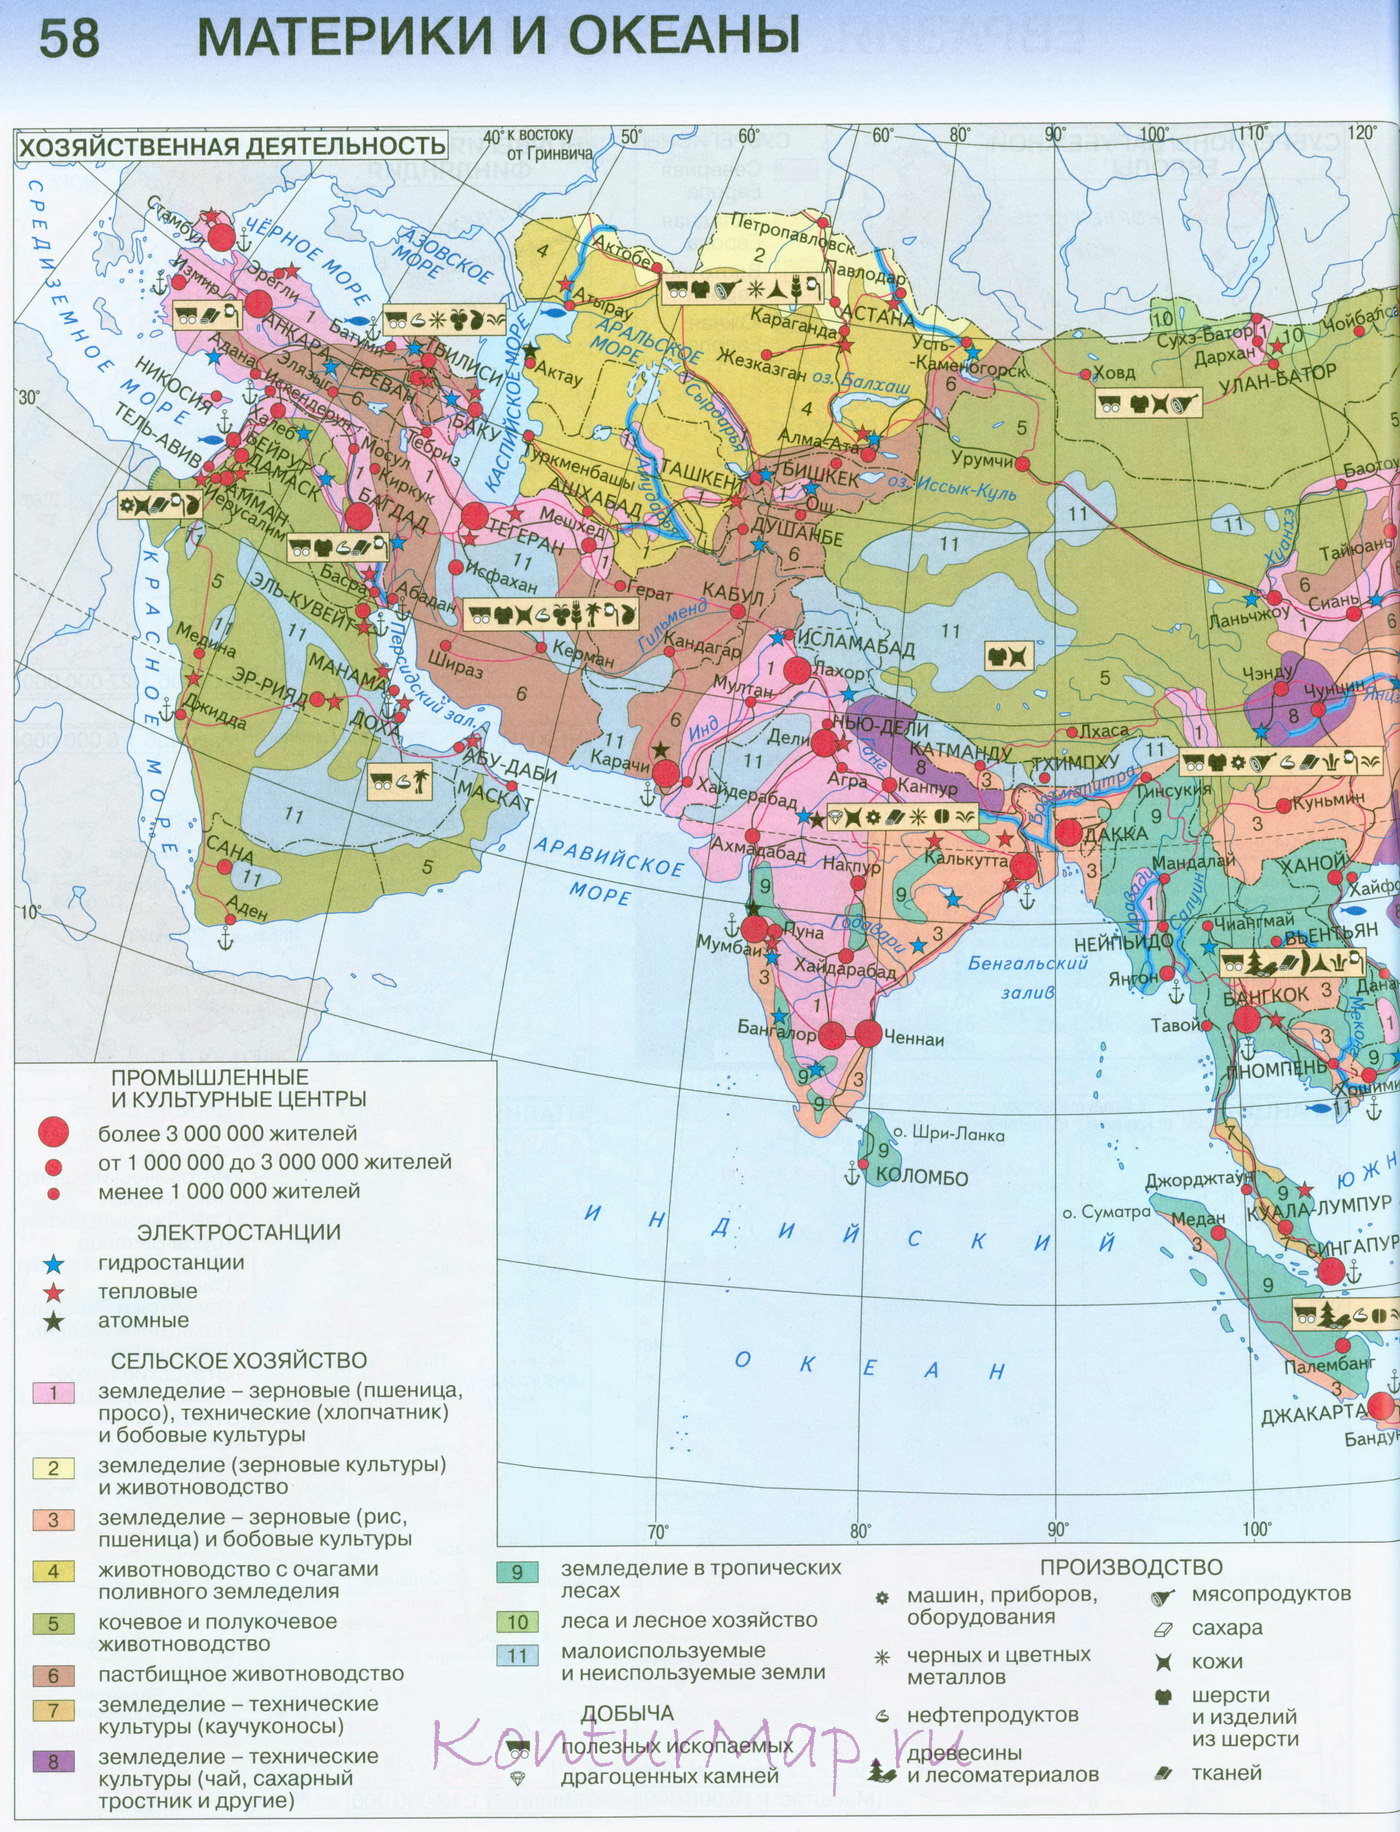 За последние 120 лет политическая карта зарубежной азии претерпела изменения